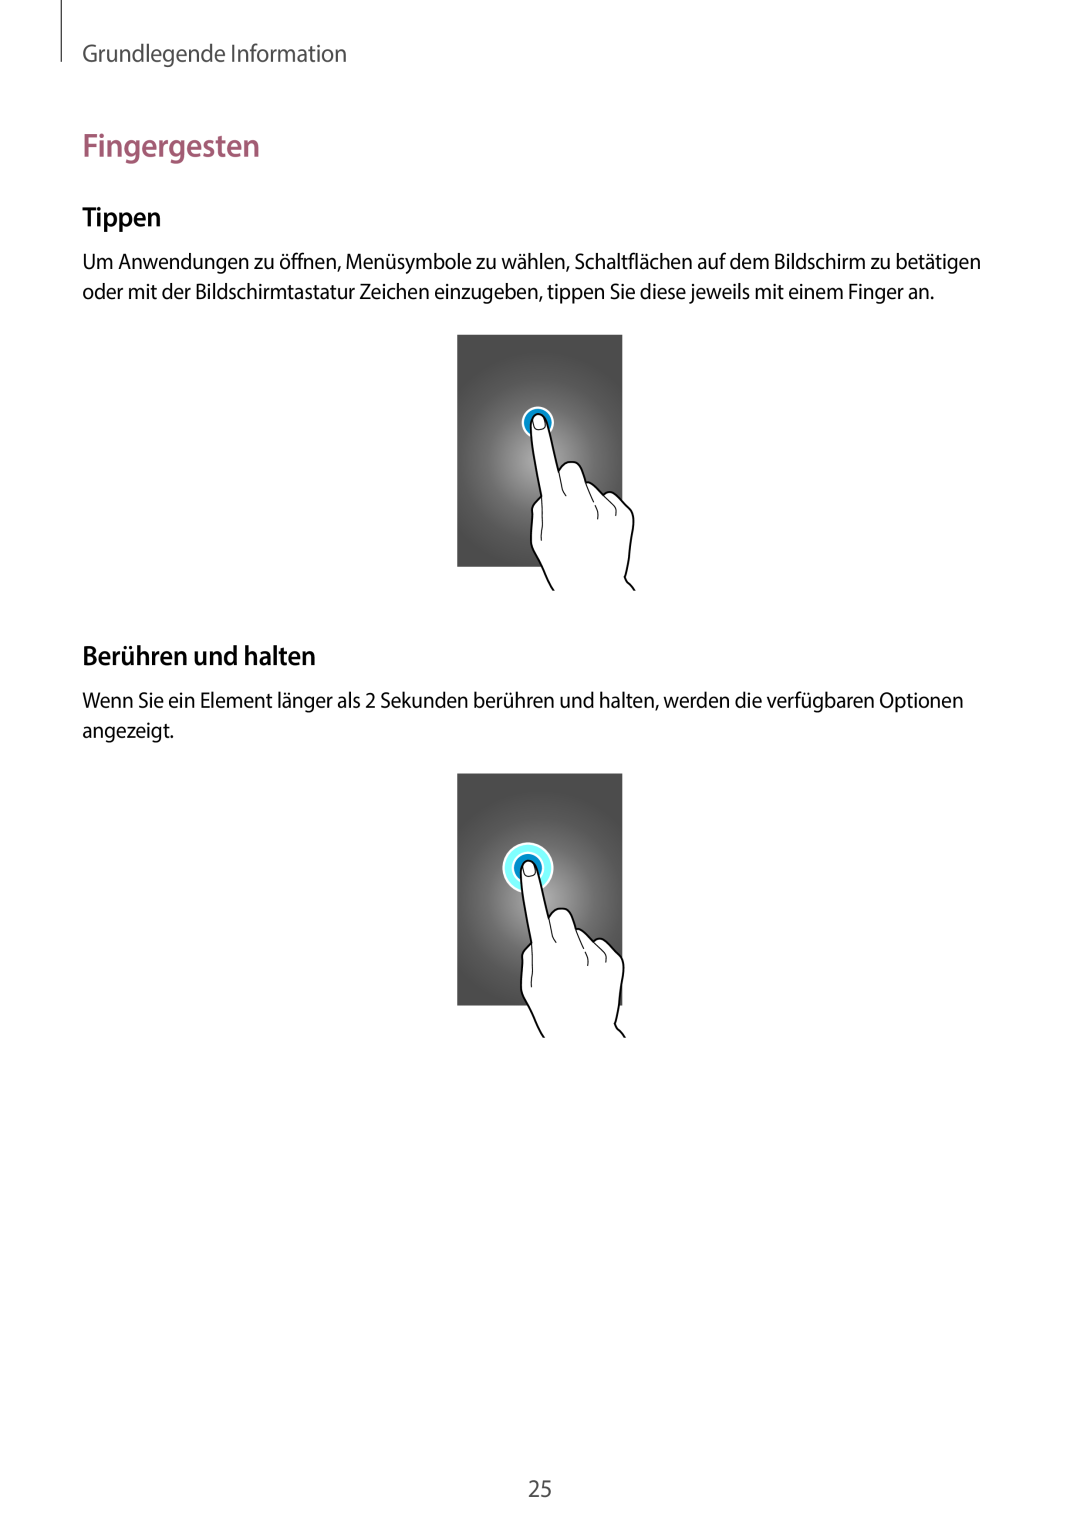 Samsung SM-C1010ZWATUR, SM-C1010ZWAEUR, SM-C1010ZWAXEO Fingergesten, Tippen, Berühren und halten, Grundlegende Information 